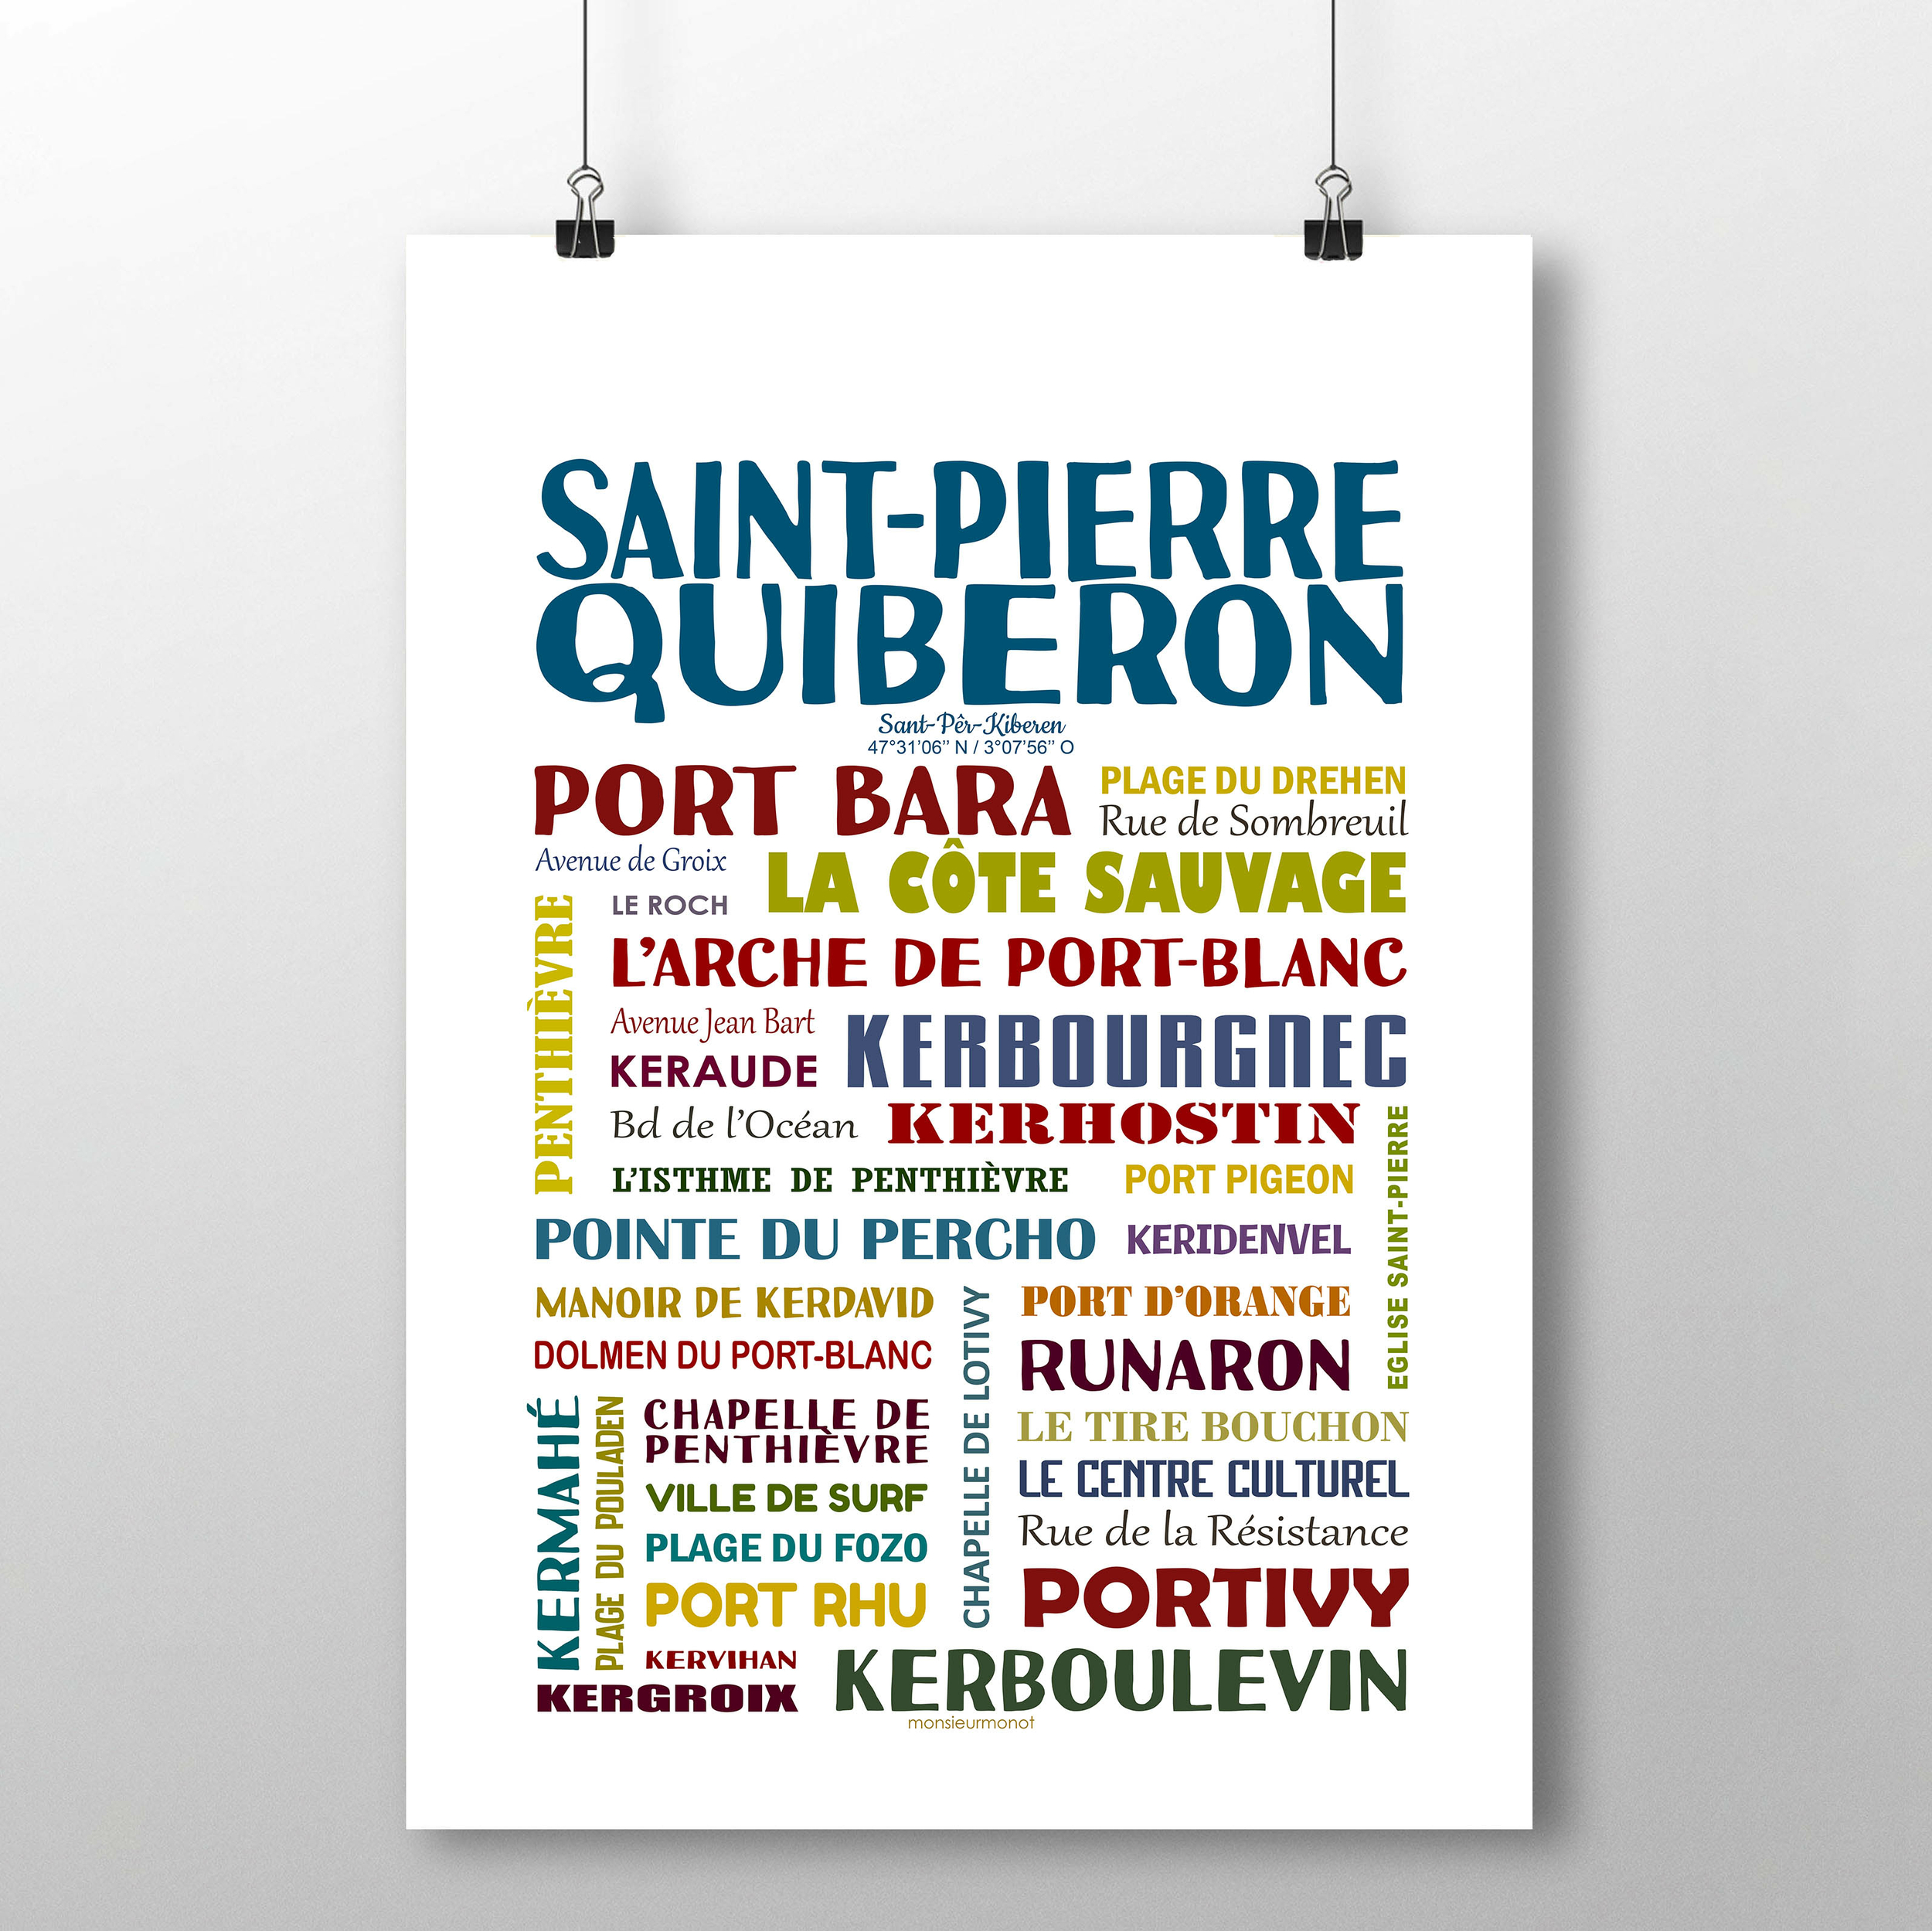 Saint Pierre quiberon 2